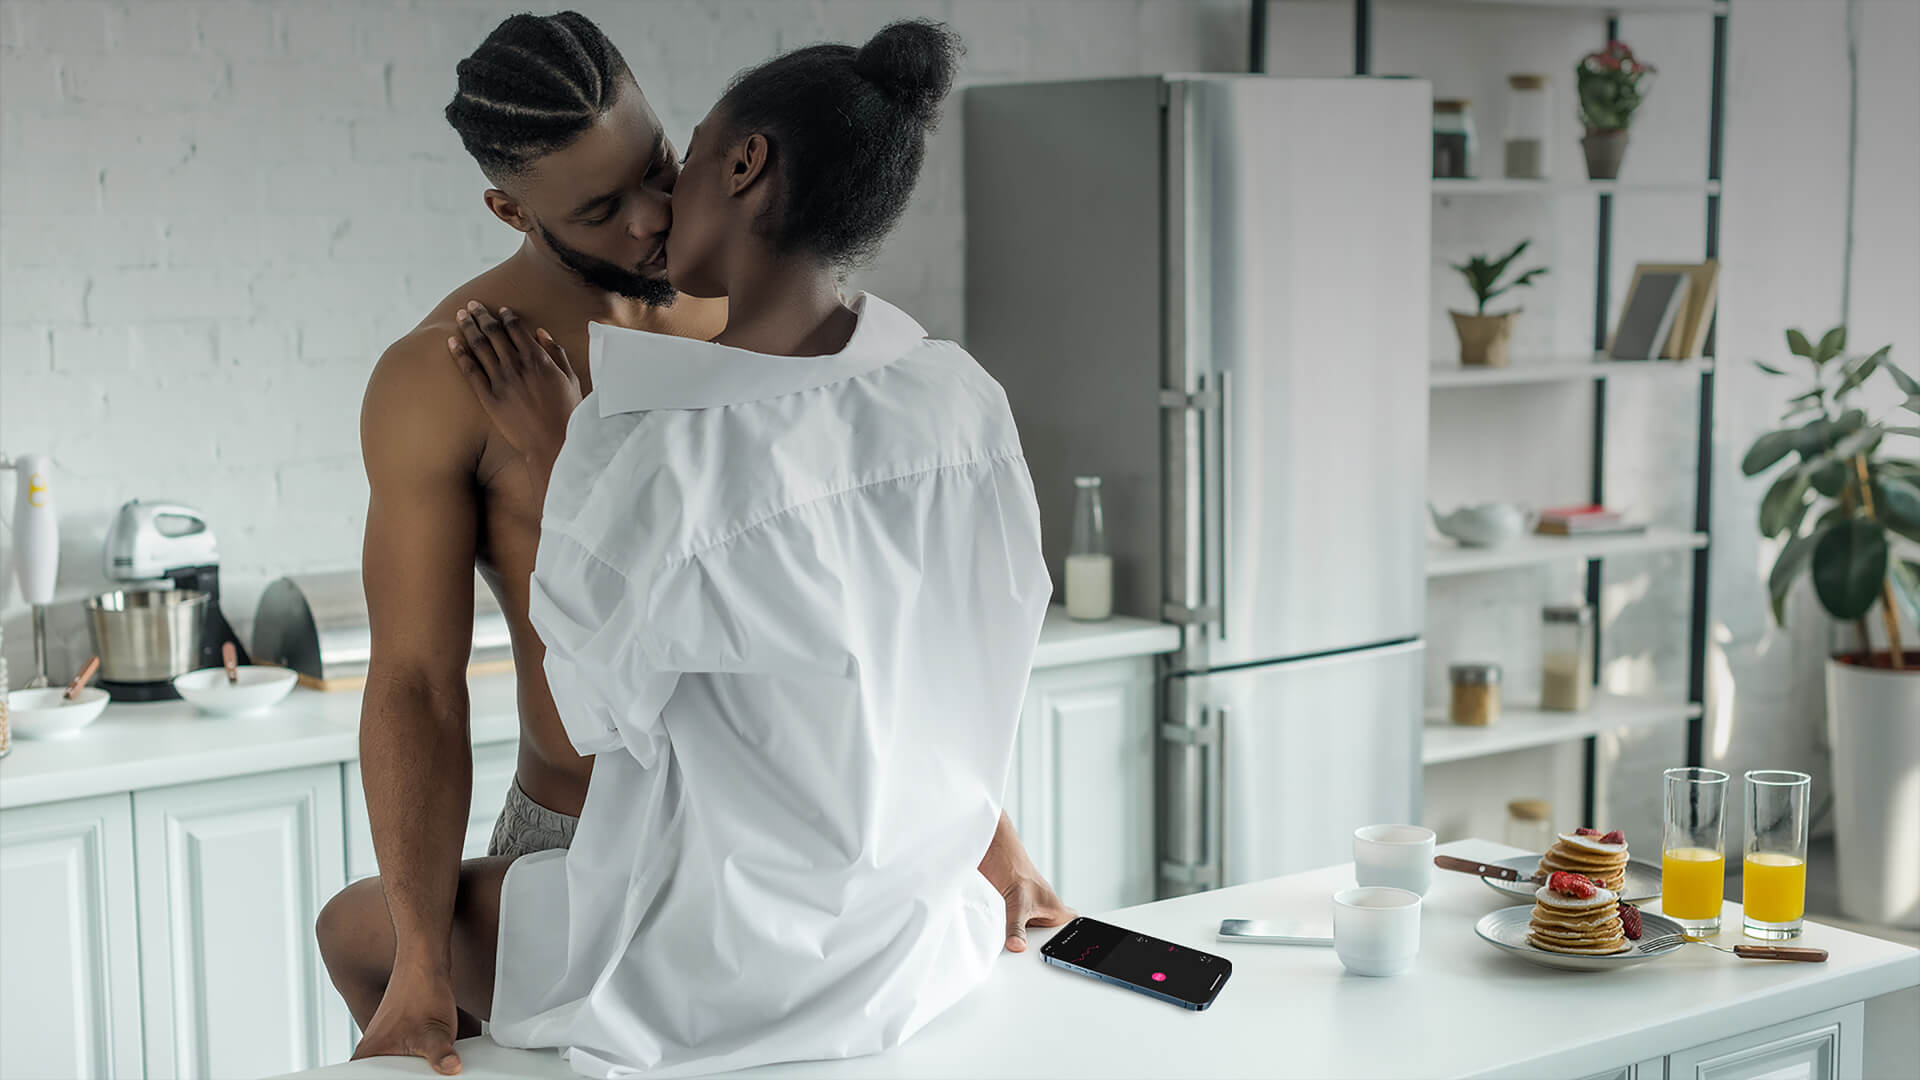 Lovense Ferri - Vorspiel in der Küche - ein nackter schwarzer Mann, der mit einer schwarzen Frau im weißen Hemd rummacht, während seine linke Hand ihren Ferri über die Lovense Remote App steuert